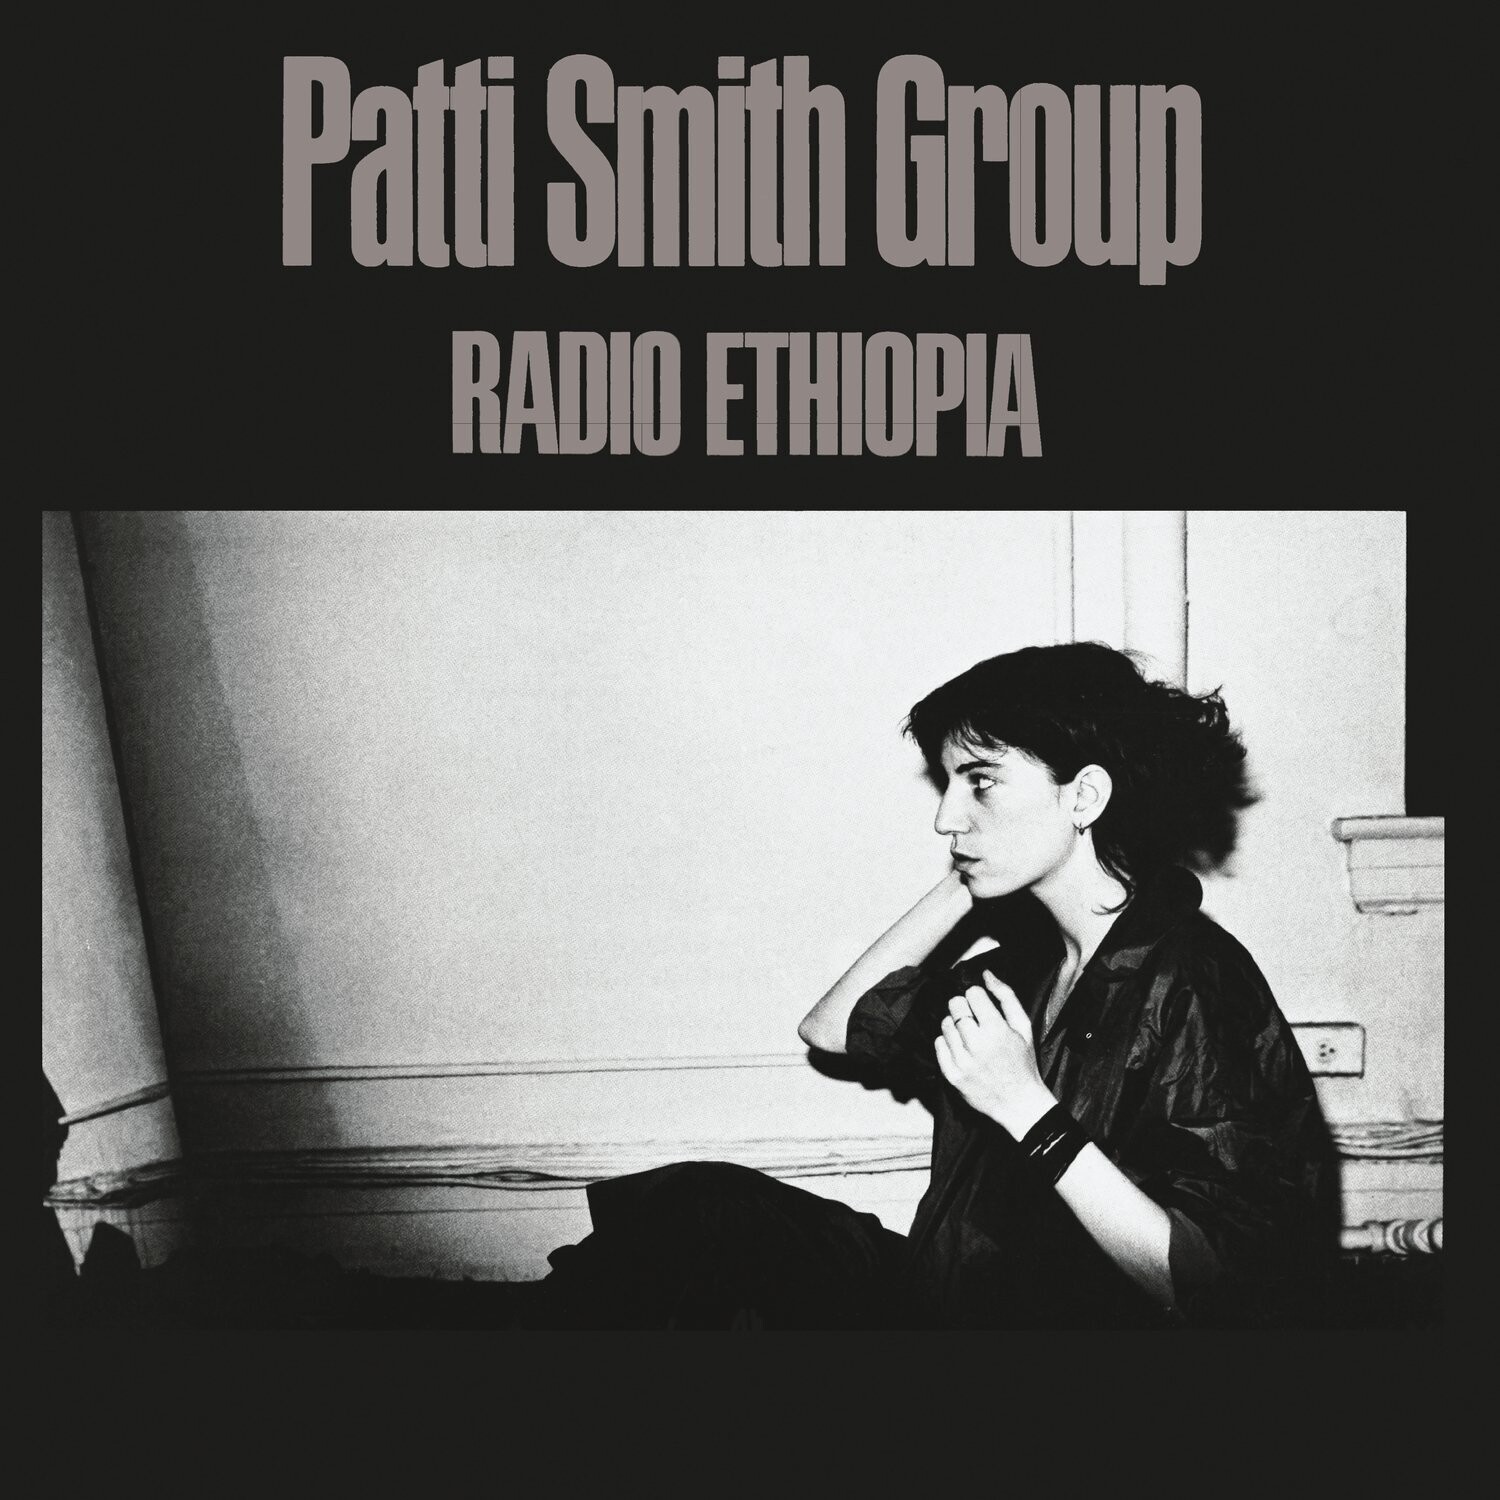 Patti Smith Group "Radio Ethiopia"